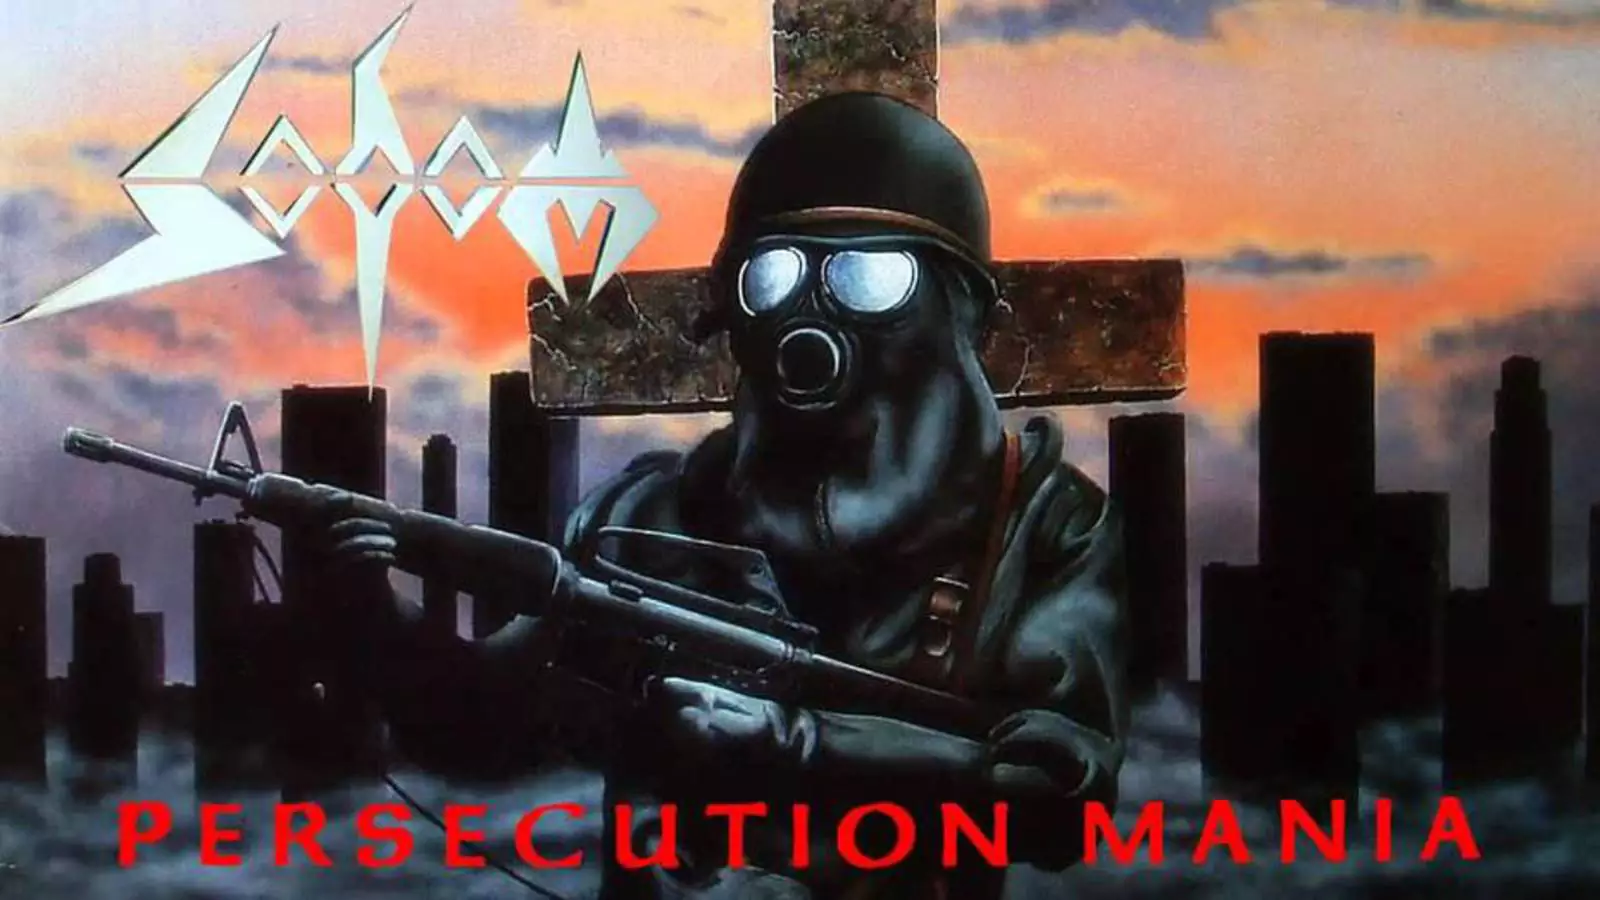 Обложка Persecution mania, классического трэшевого альбома группы Sodom